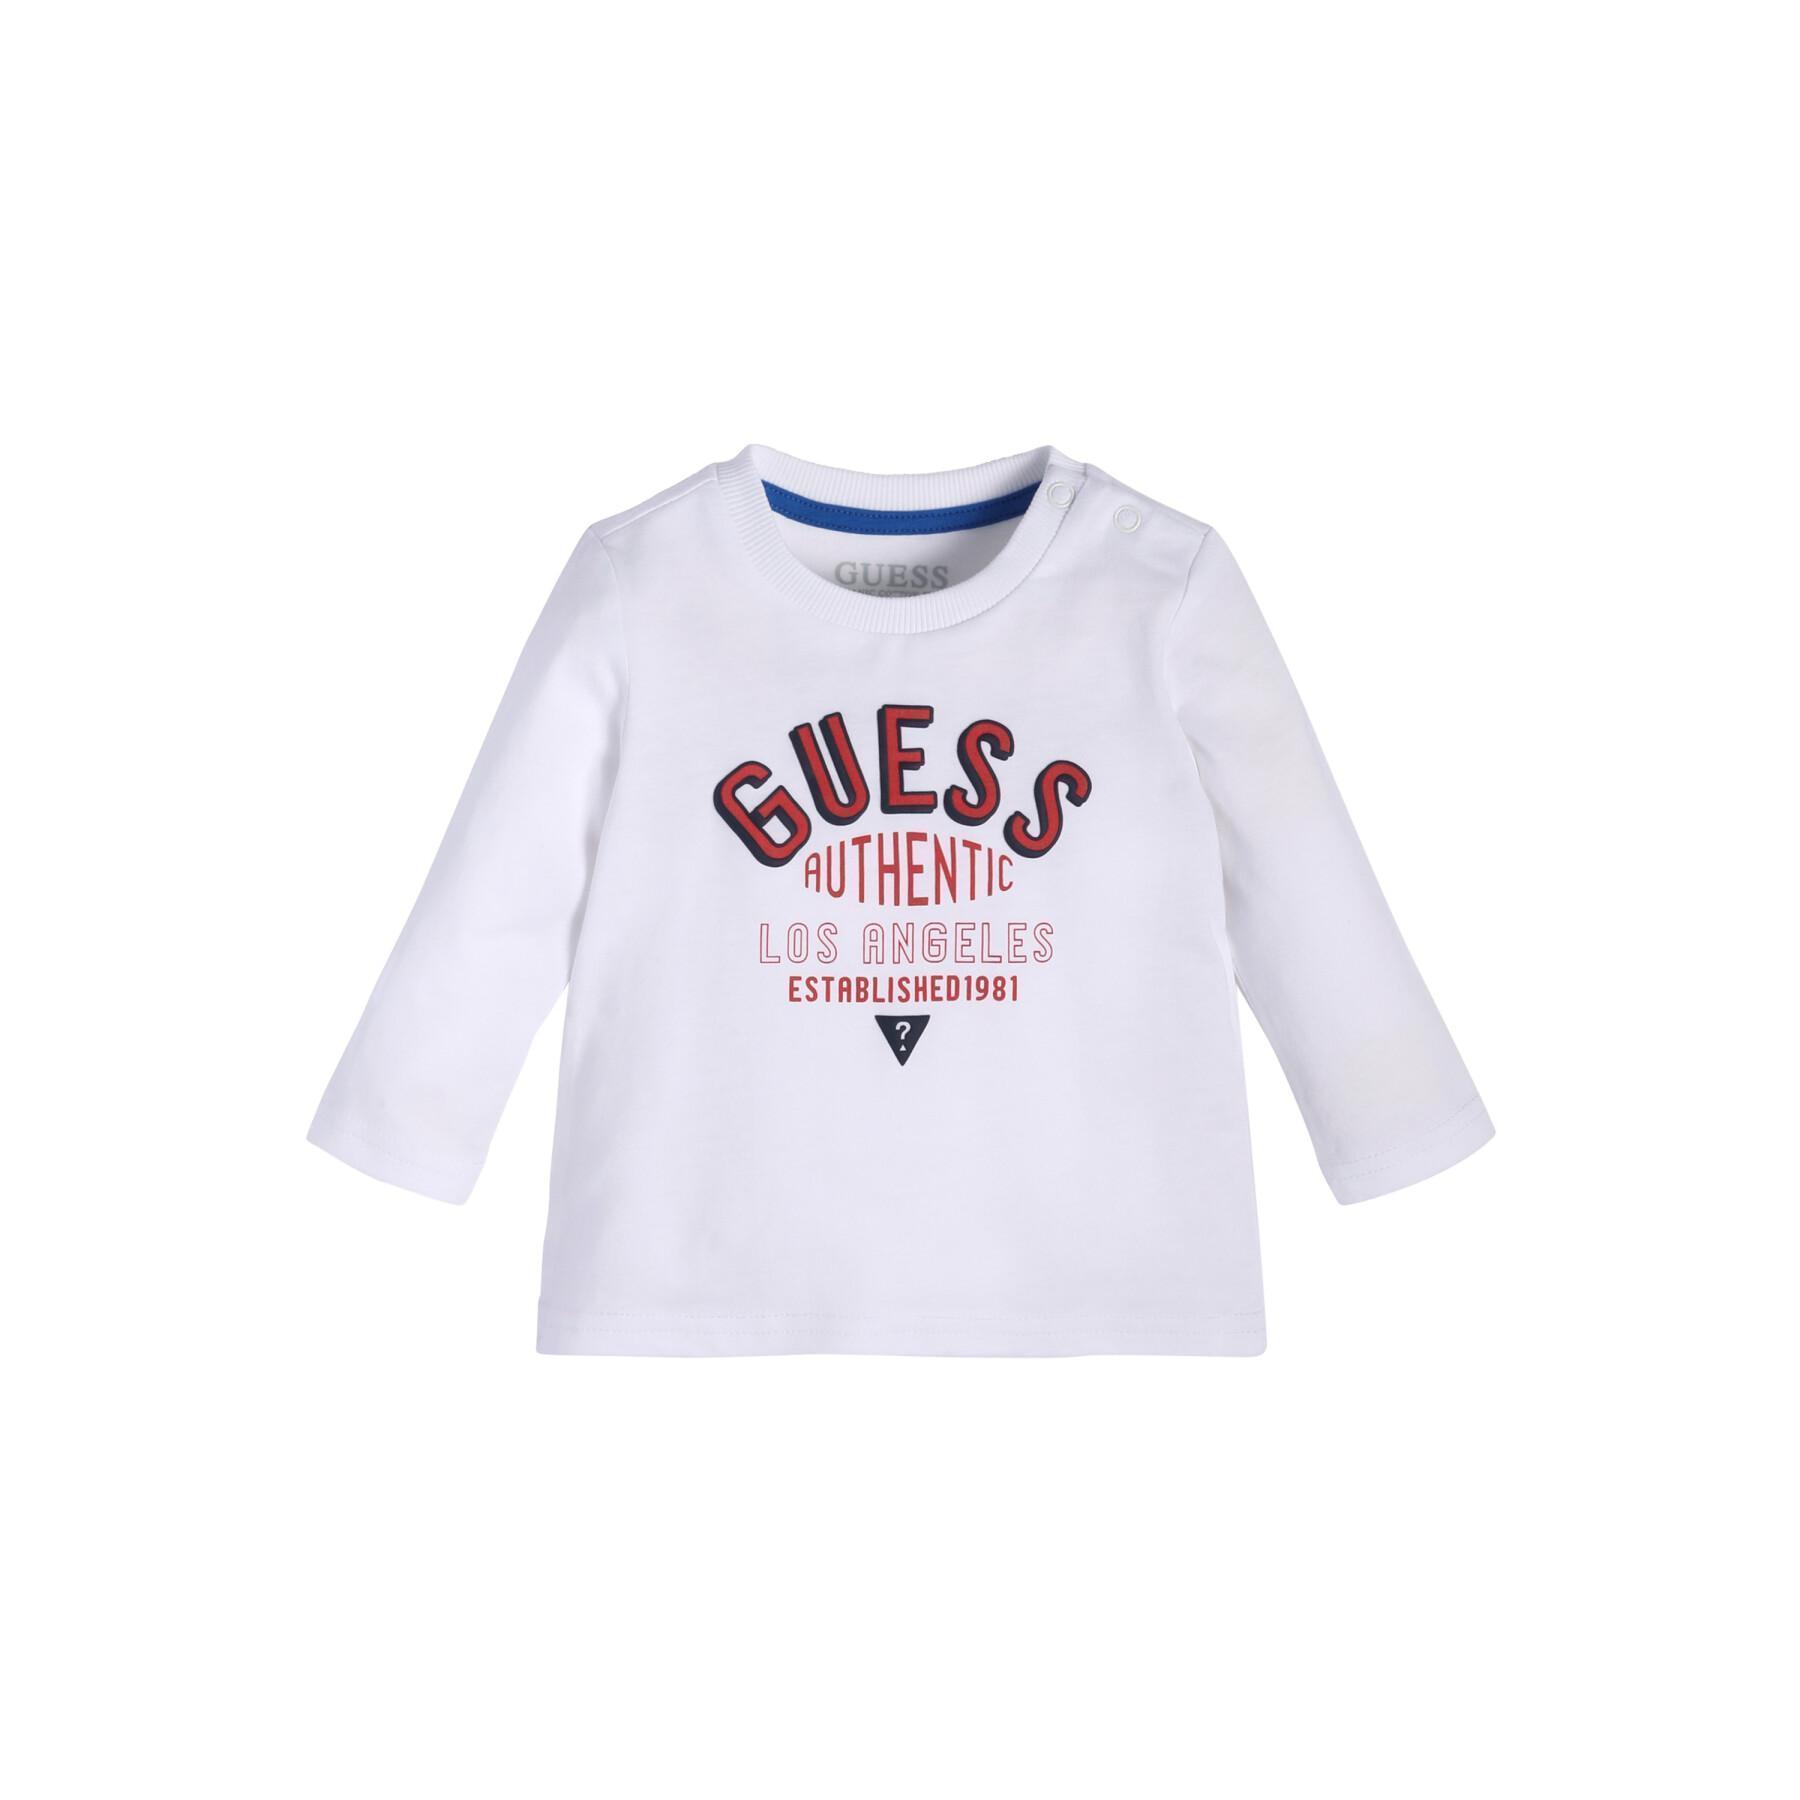 Camiseta de manga larga para bebé niño Guess